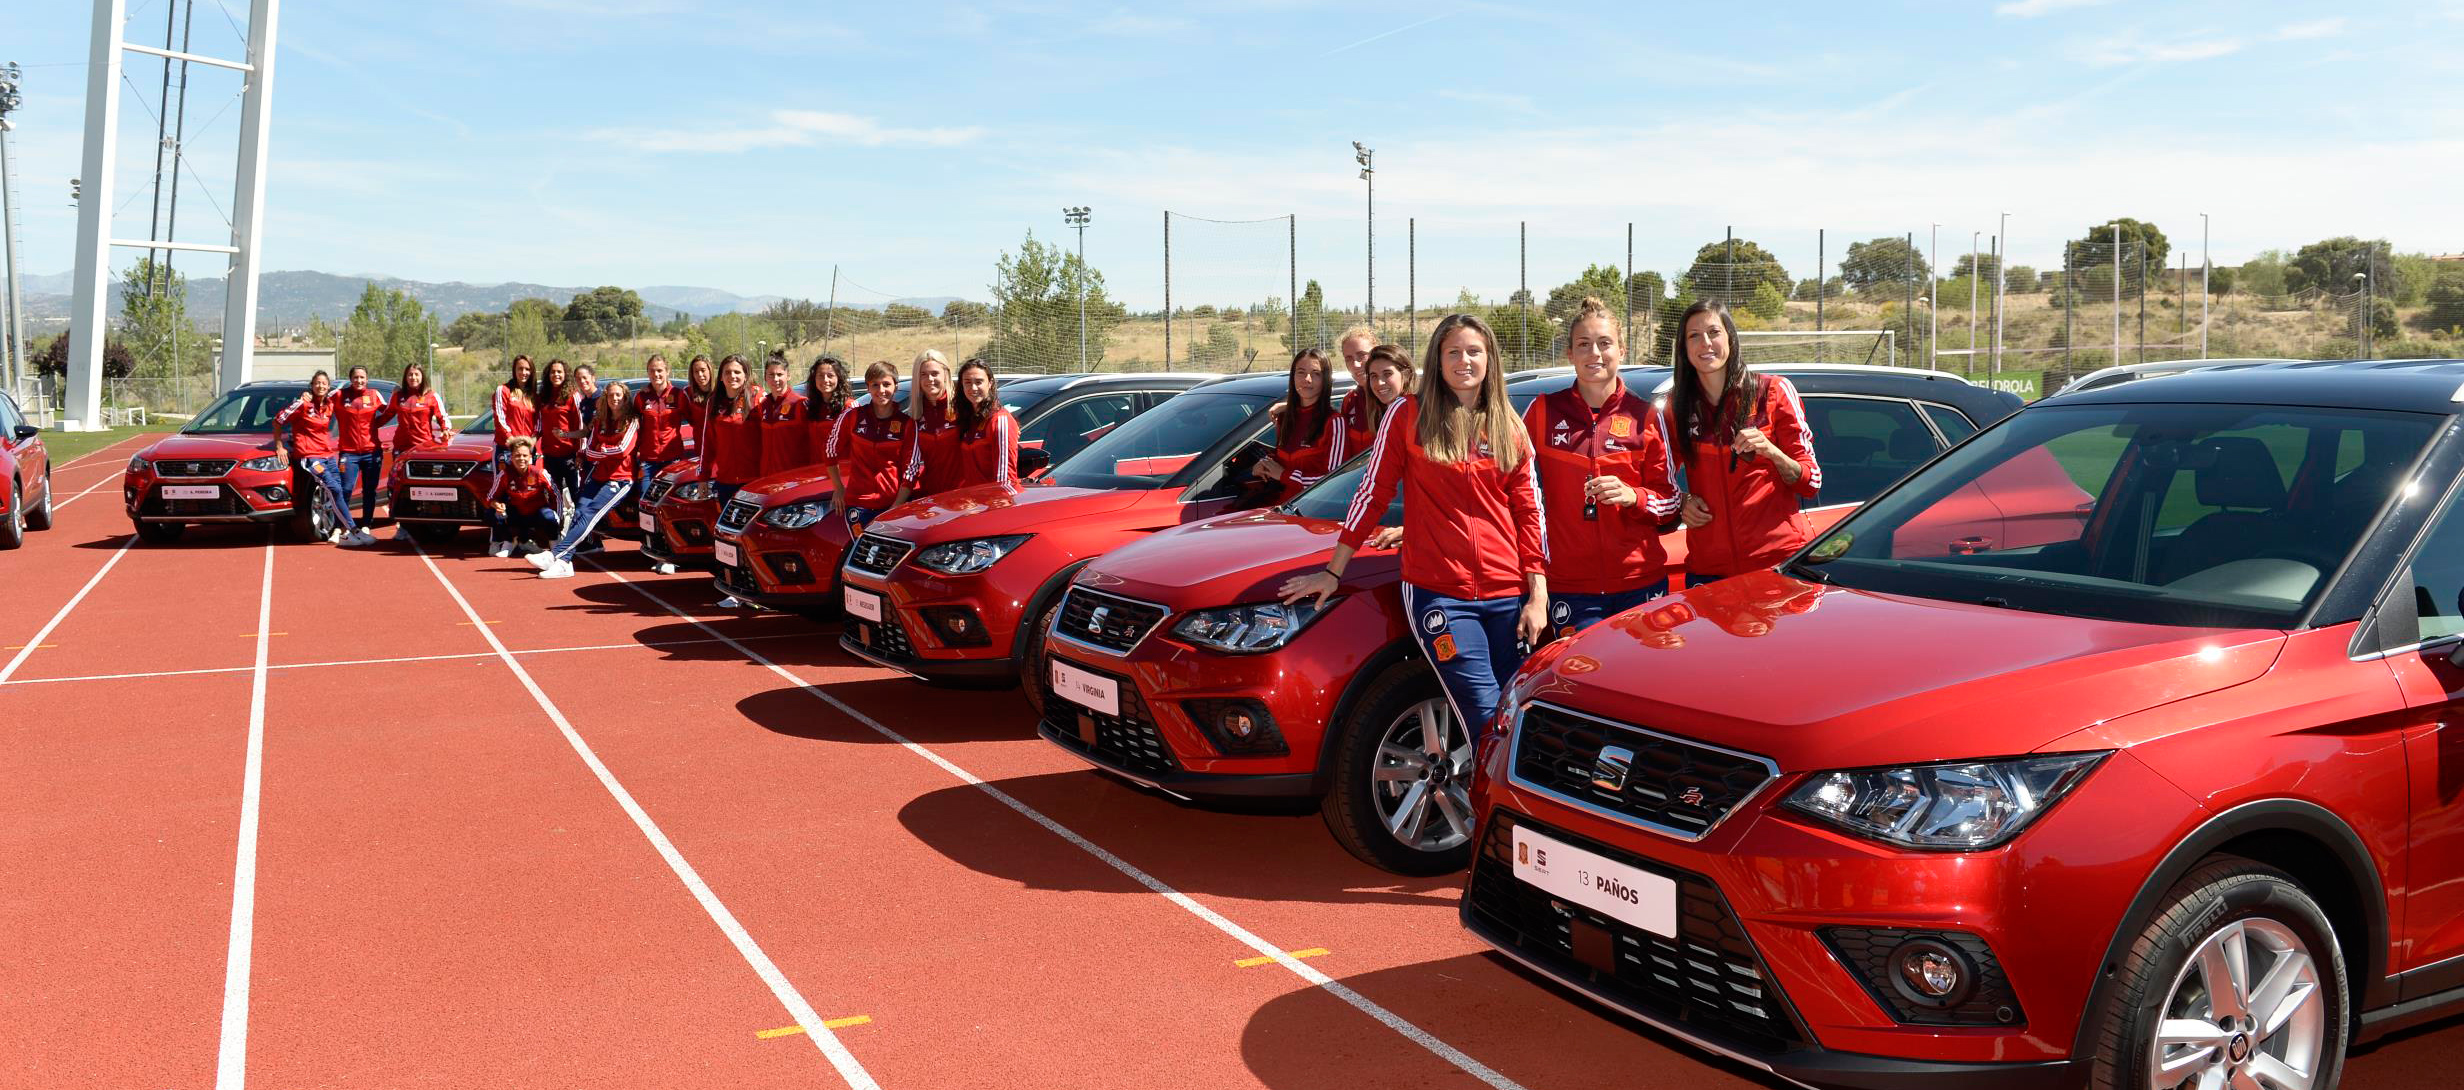 SEAT patrocinará a la Selección Española de fútbol femenino